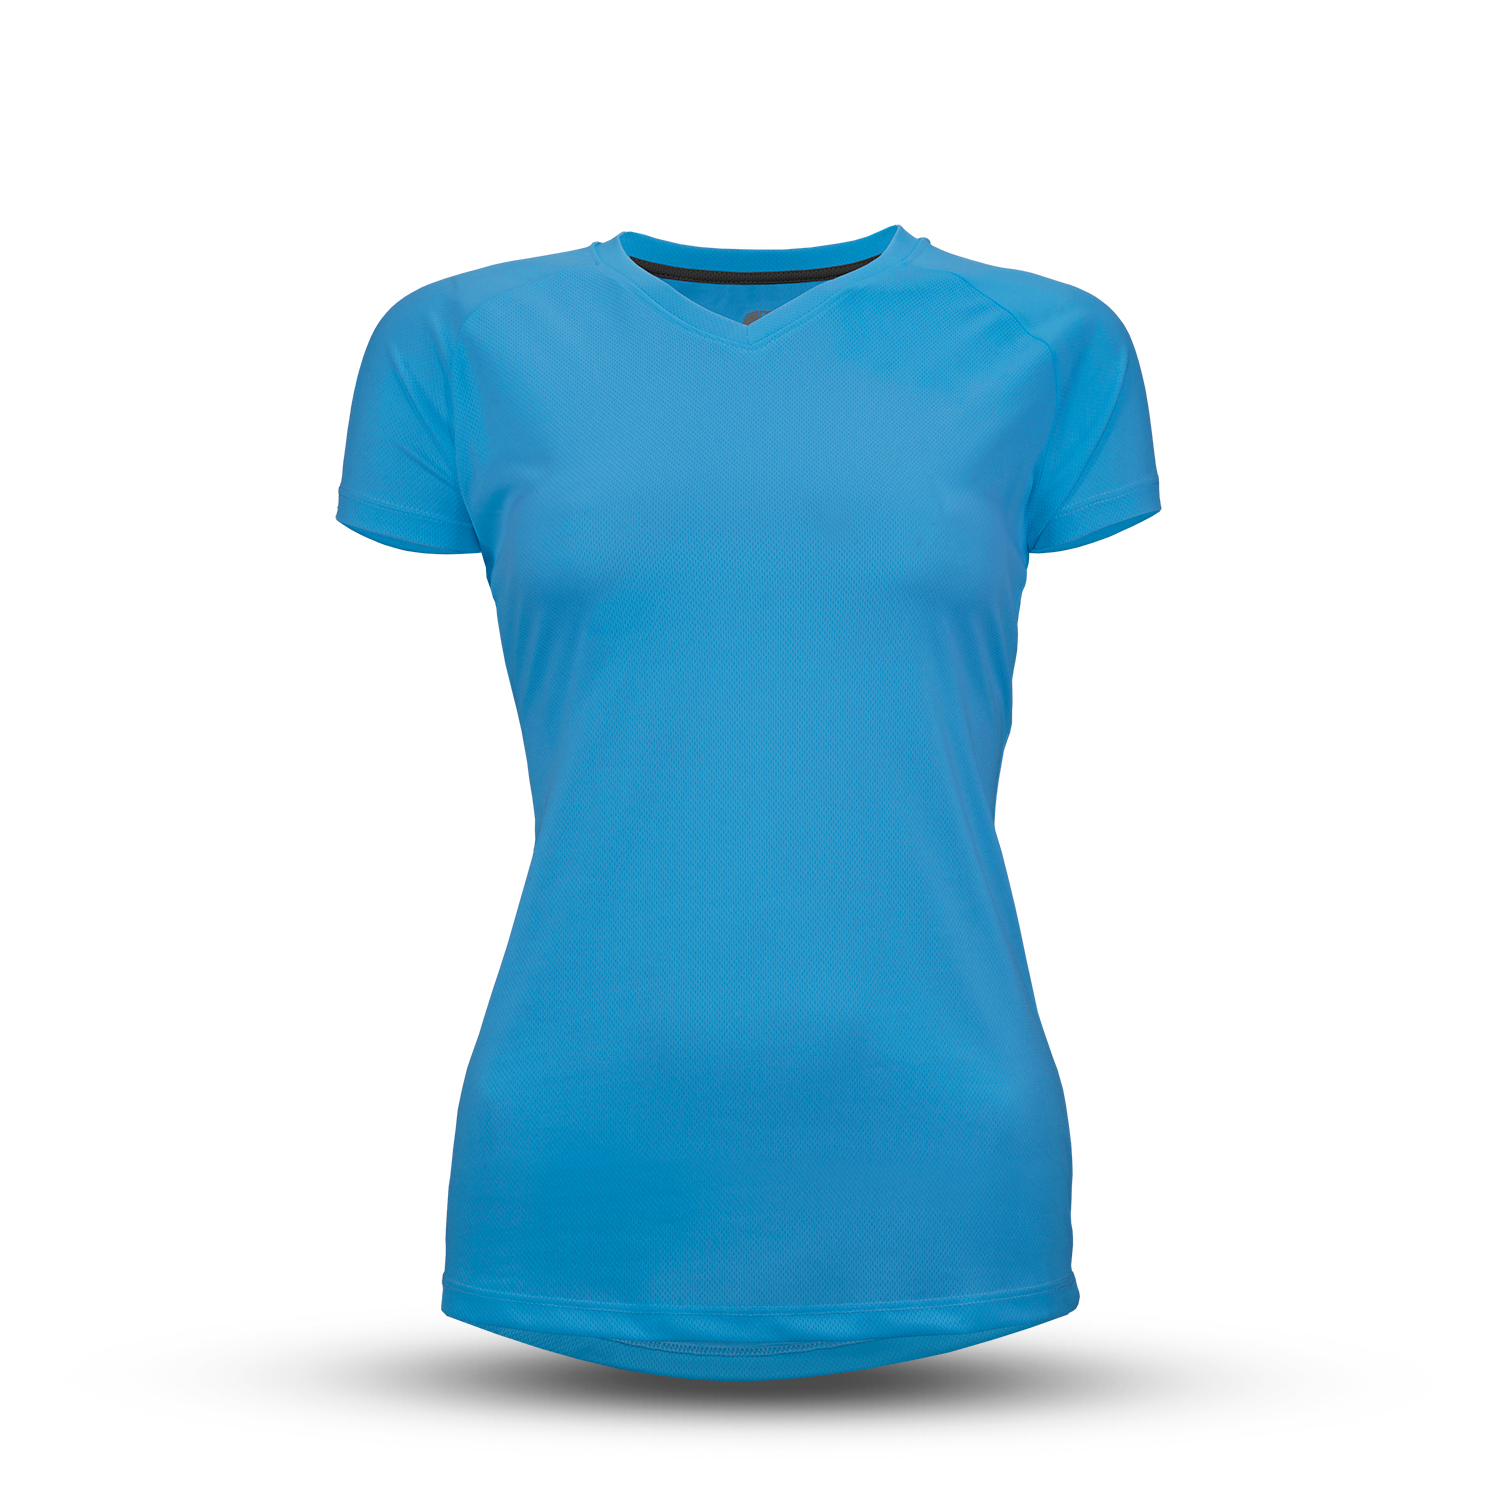 T-Shirt - Damen - Größe L - Farbe: blau